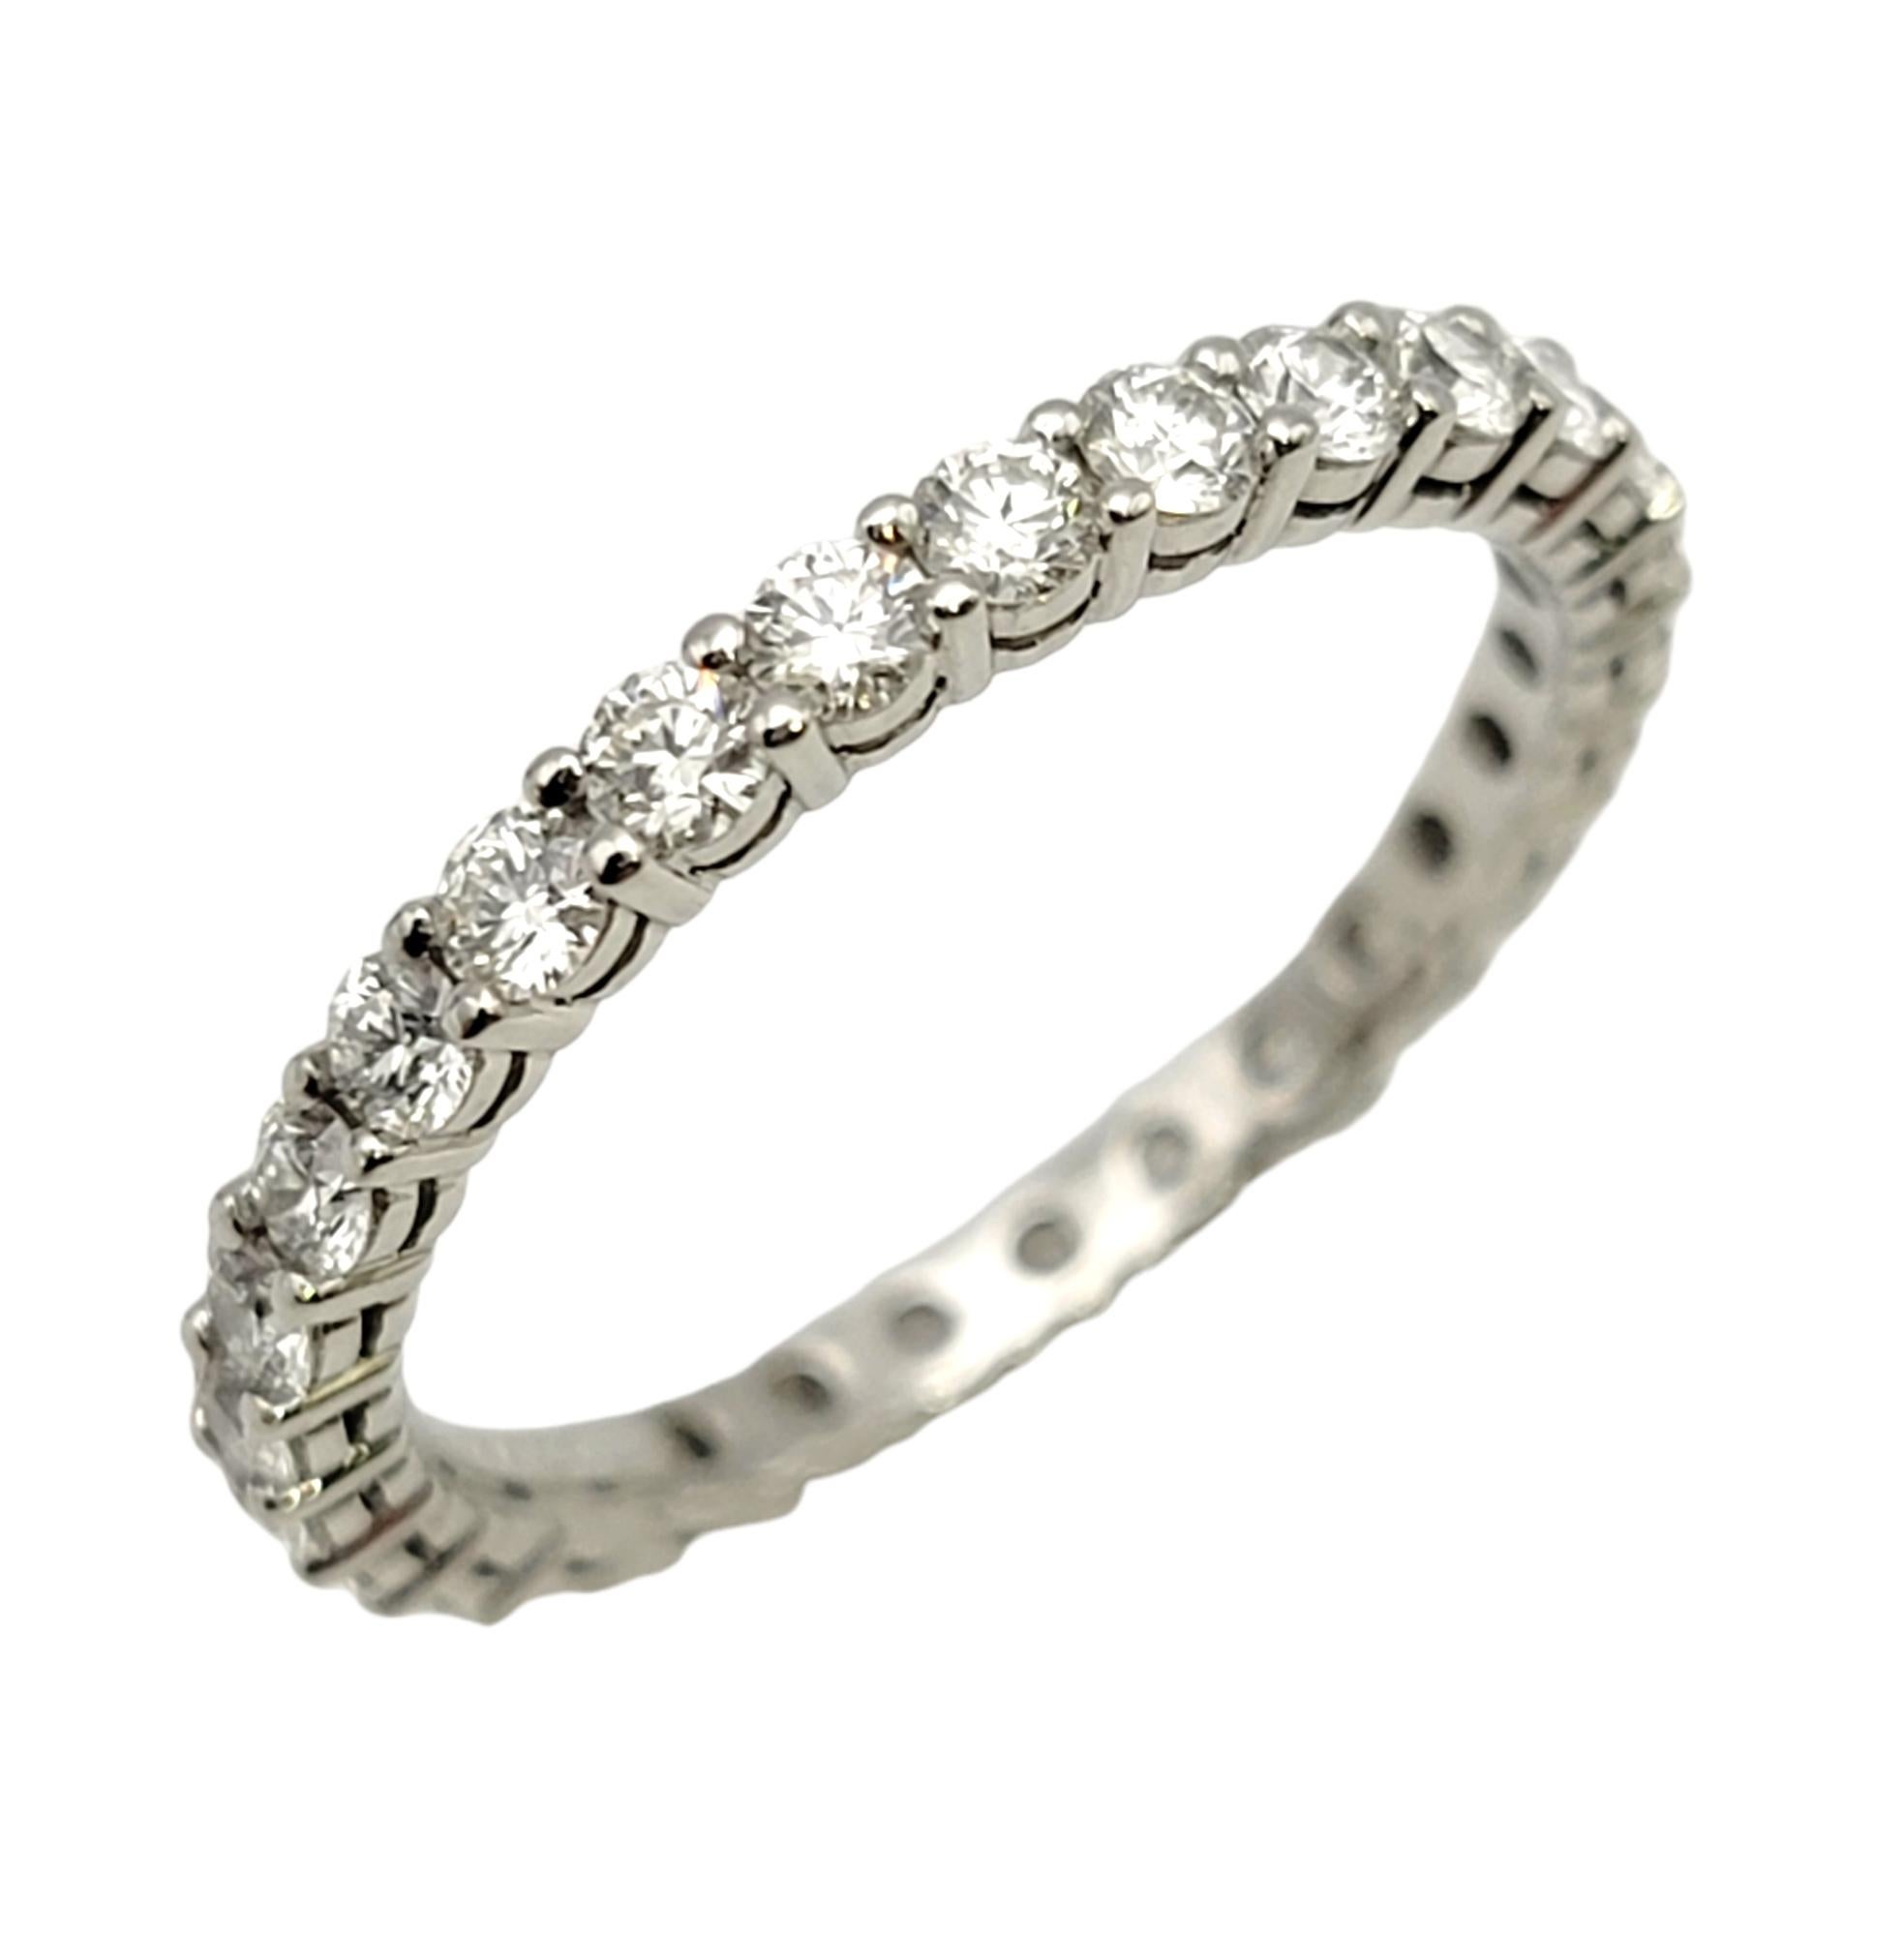 Ringgröße: 5.75

Atemberaubender Tiffany & Co. Diamantring 'Embrace' für die Ewigkeit. Diese zeitlose Schönheit zeichnet sich durch 28 eisweiße runde Diamanten aus, die in einer einzigen eleganten Reihe entlang des gesamten Schmuckstücks gefasst